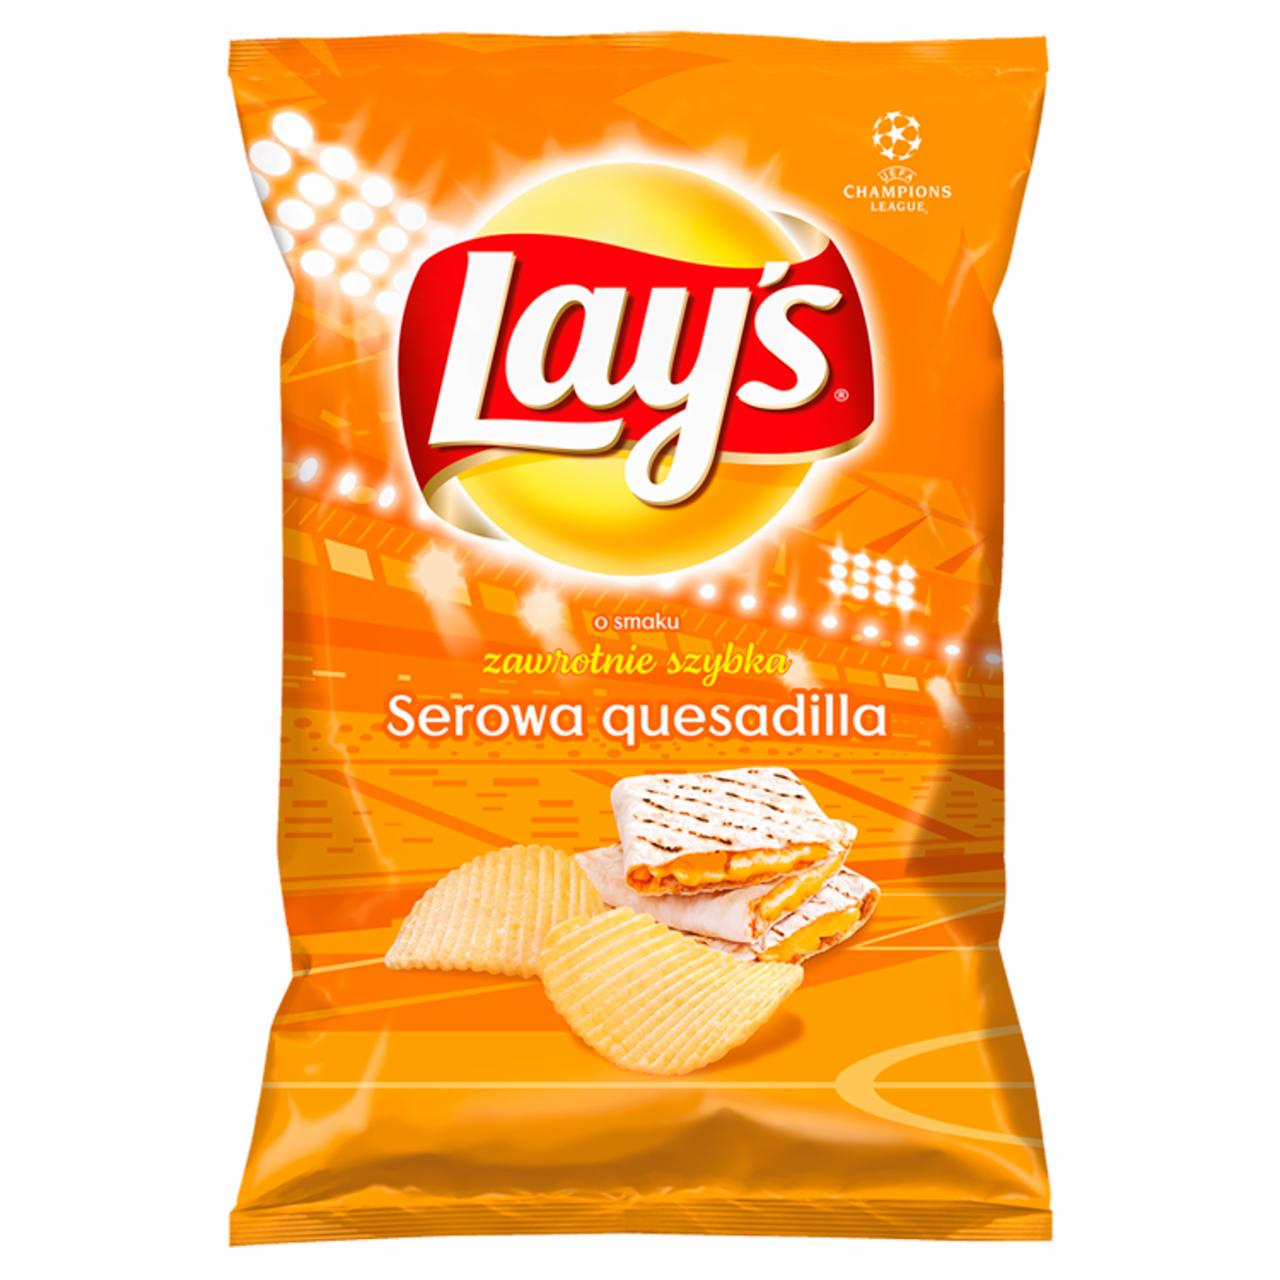 Zdjęcia - Lay's Chipsy ziemniaczane karbowane o smaku serowej quesadilli 130 g